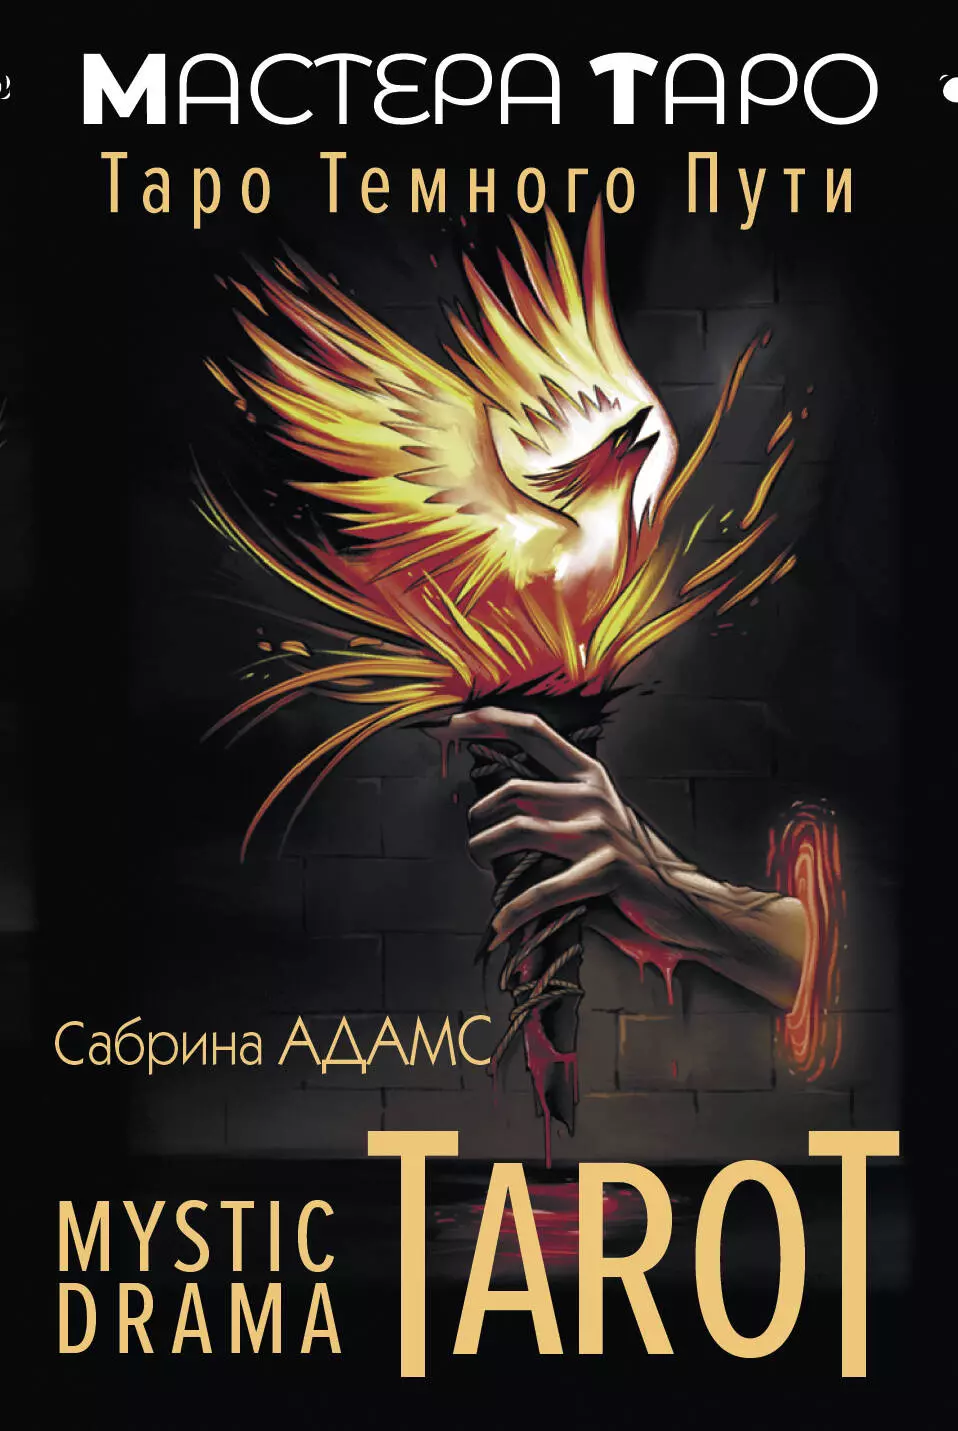 Mystic Drama Tarot. Таро темного пути (78 карт и руководство) таро сериалов tv